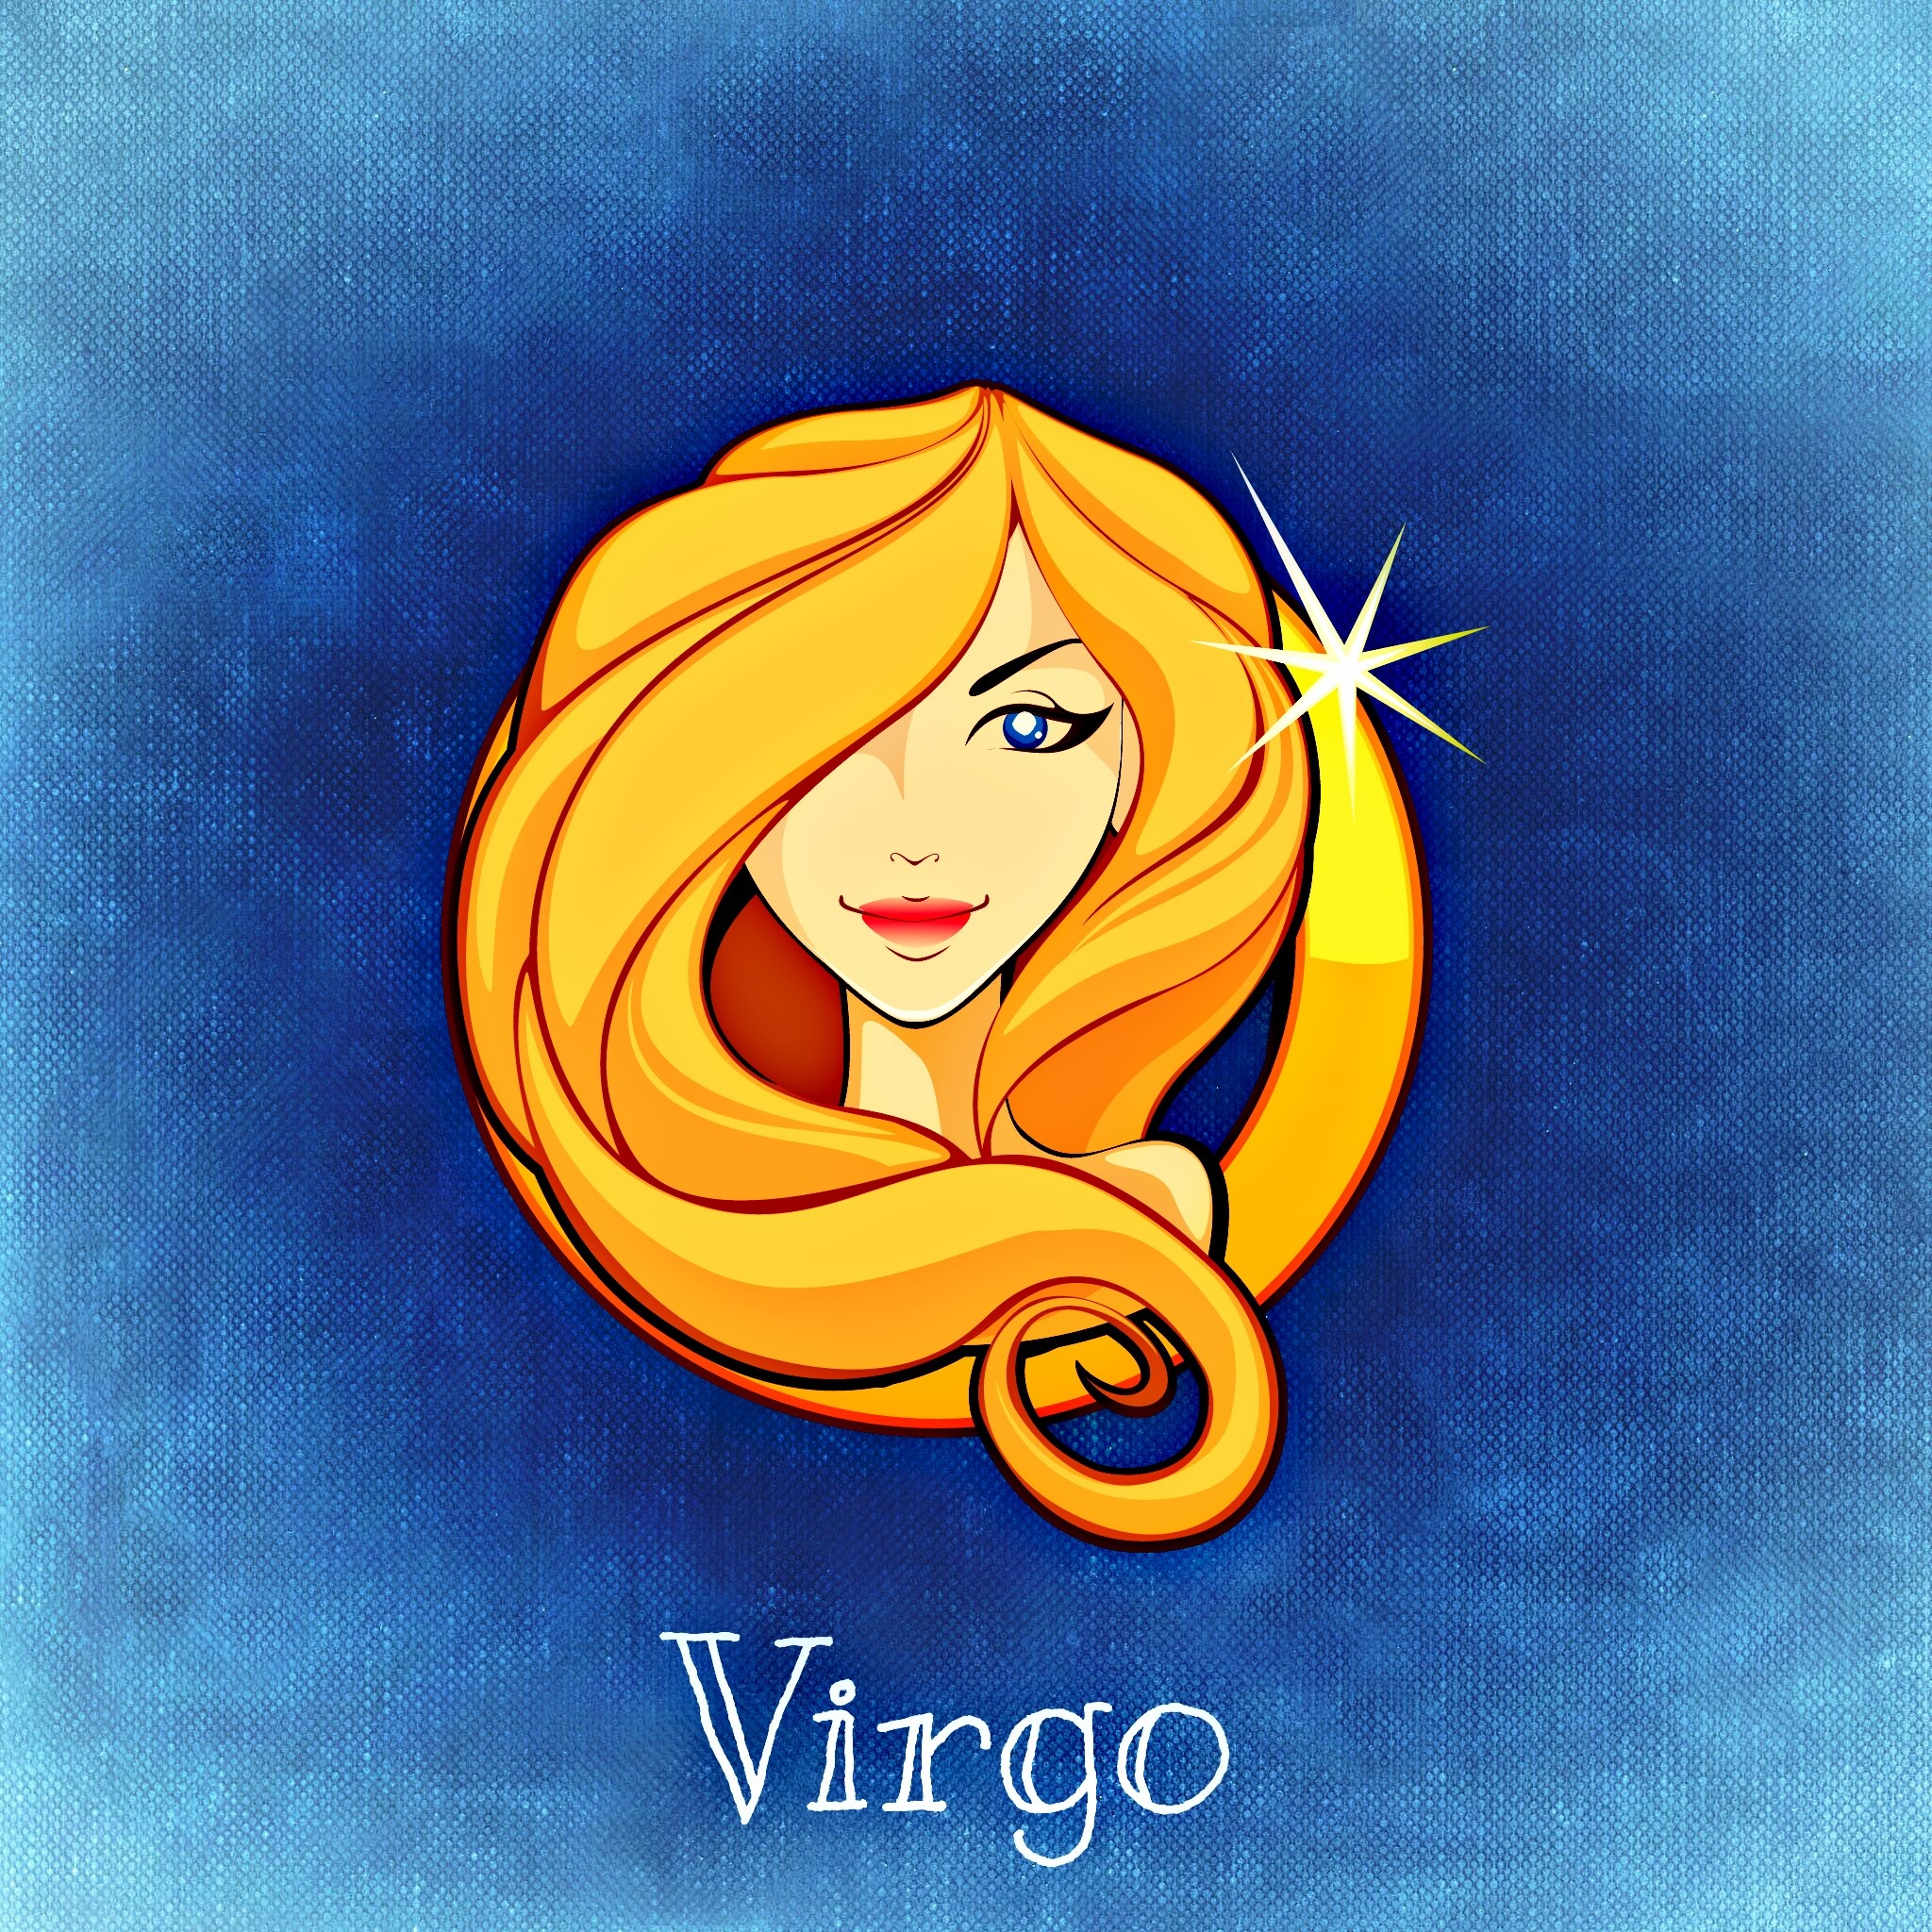 Virgo Horoscope - Friendship, Love, Relationship, Career